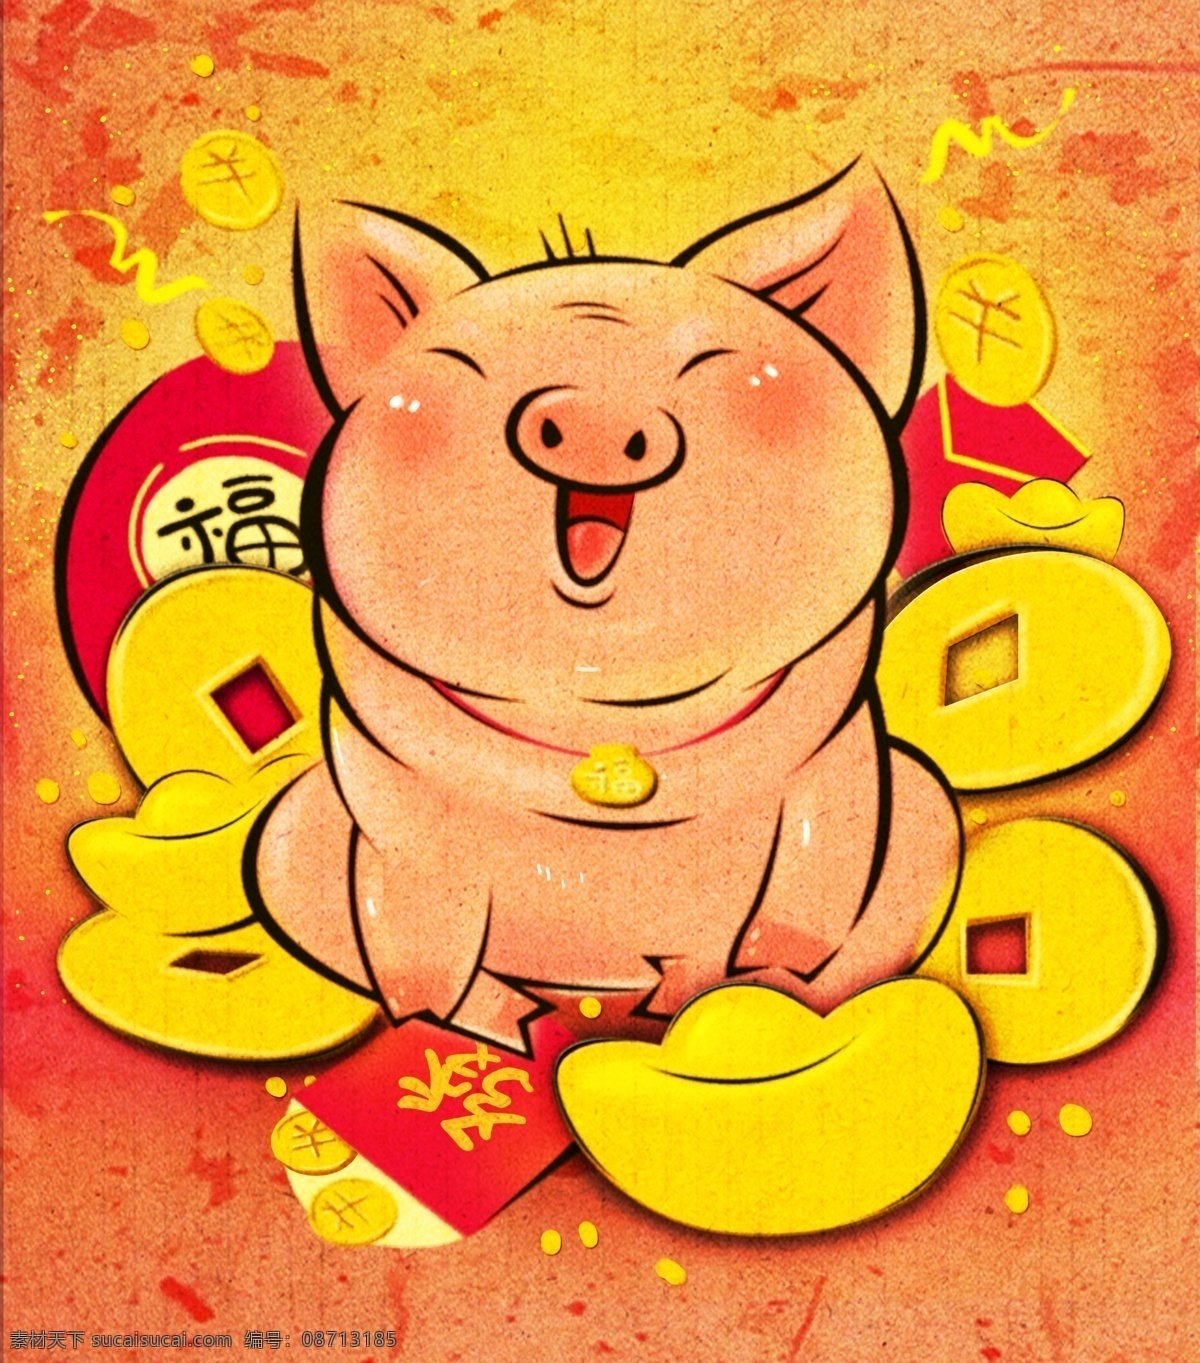 猪年 水墨 中国 年画 原创 手绘 喜庆 元宝 金币 可爱 红包 猪 过年 福袋 国画水墨 高清图 psd格式